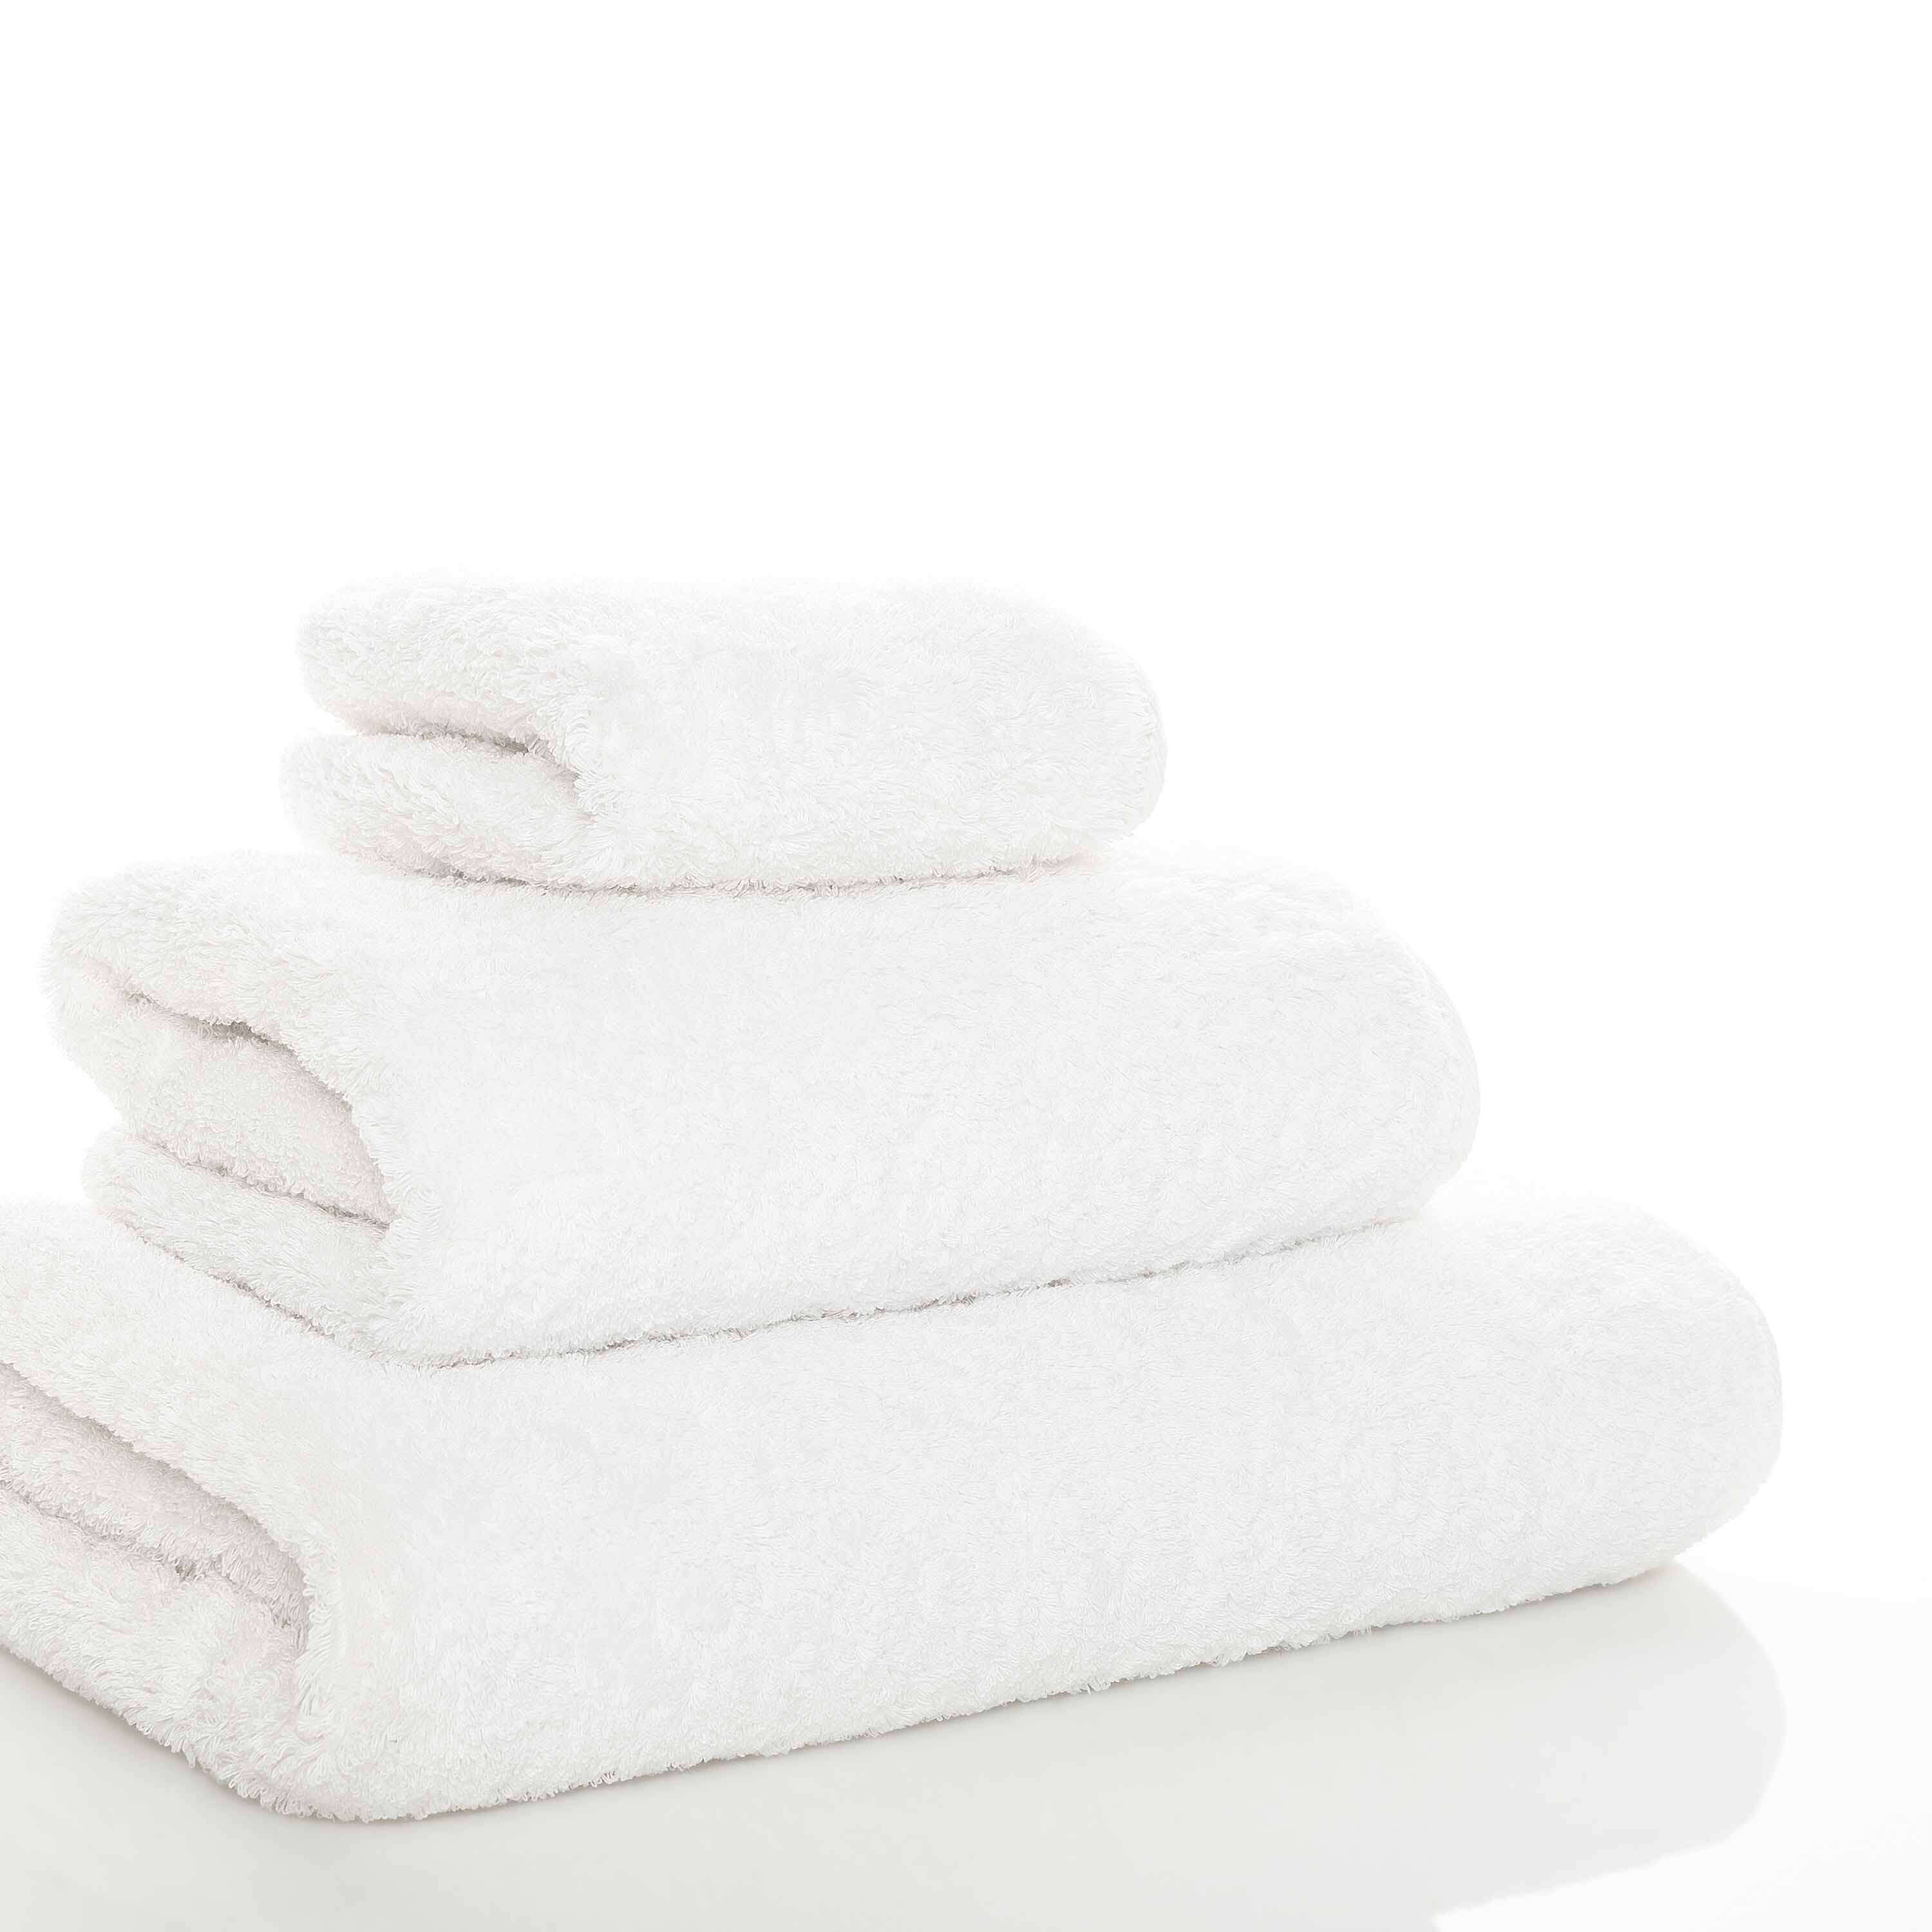 Элитное полотенце Egoist Range White ☞ Размер: 105 x 180 см